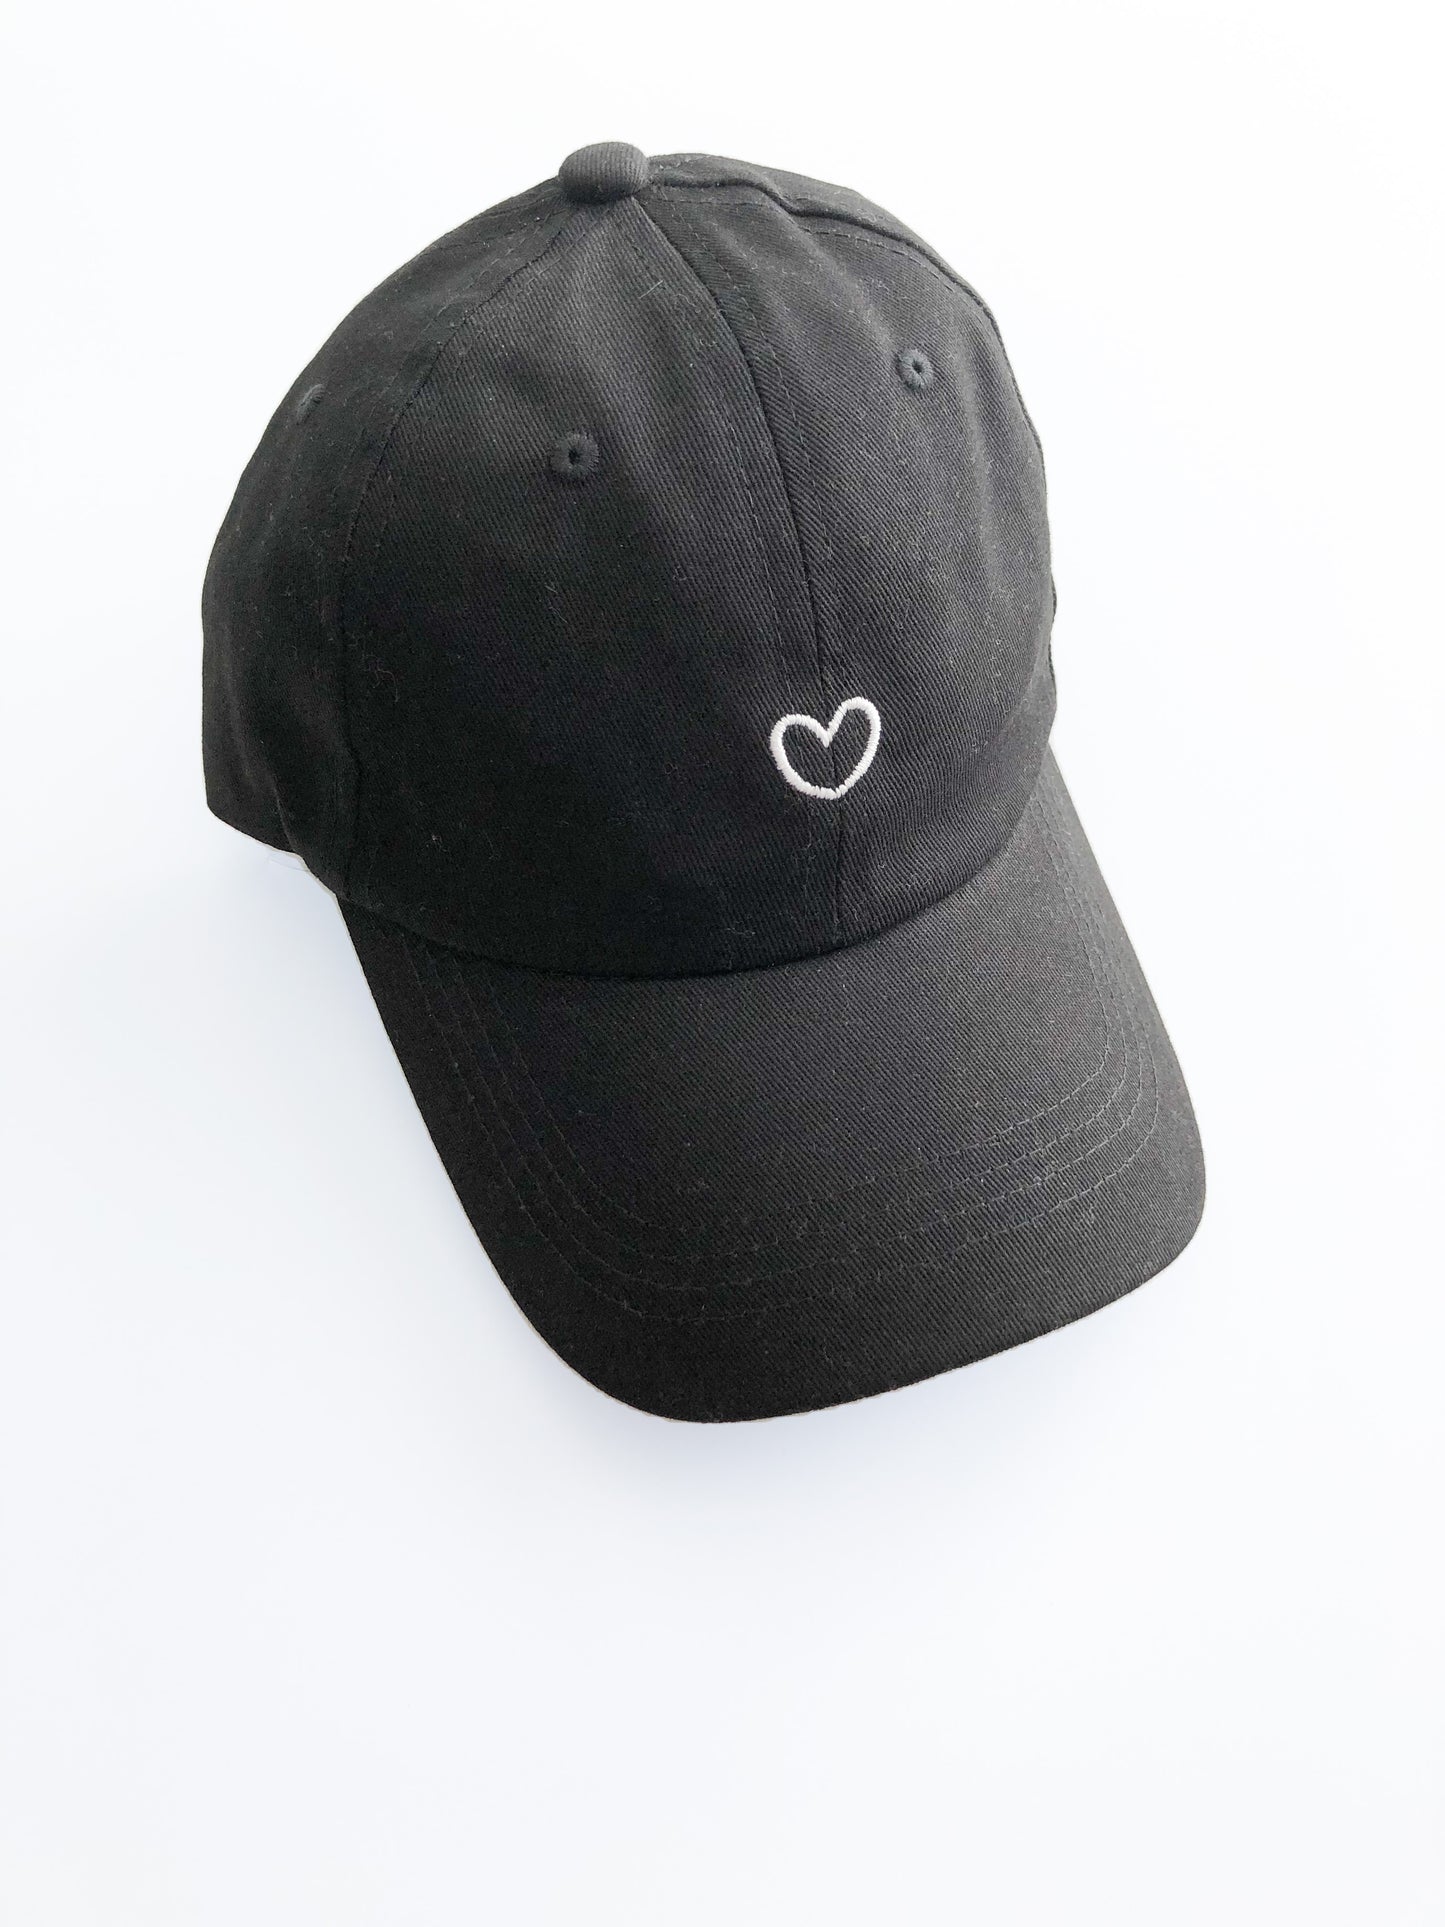 Black + White Heart Baseball Hat